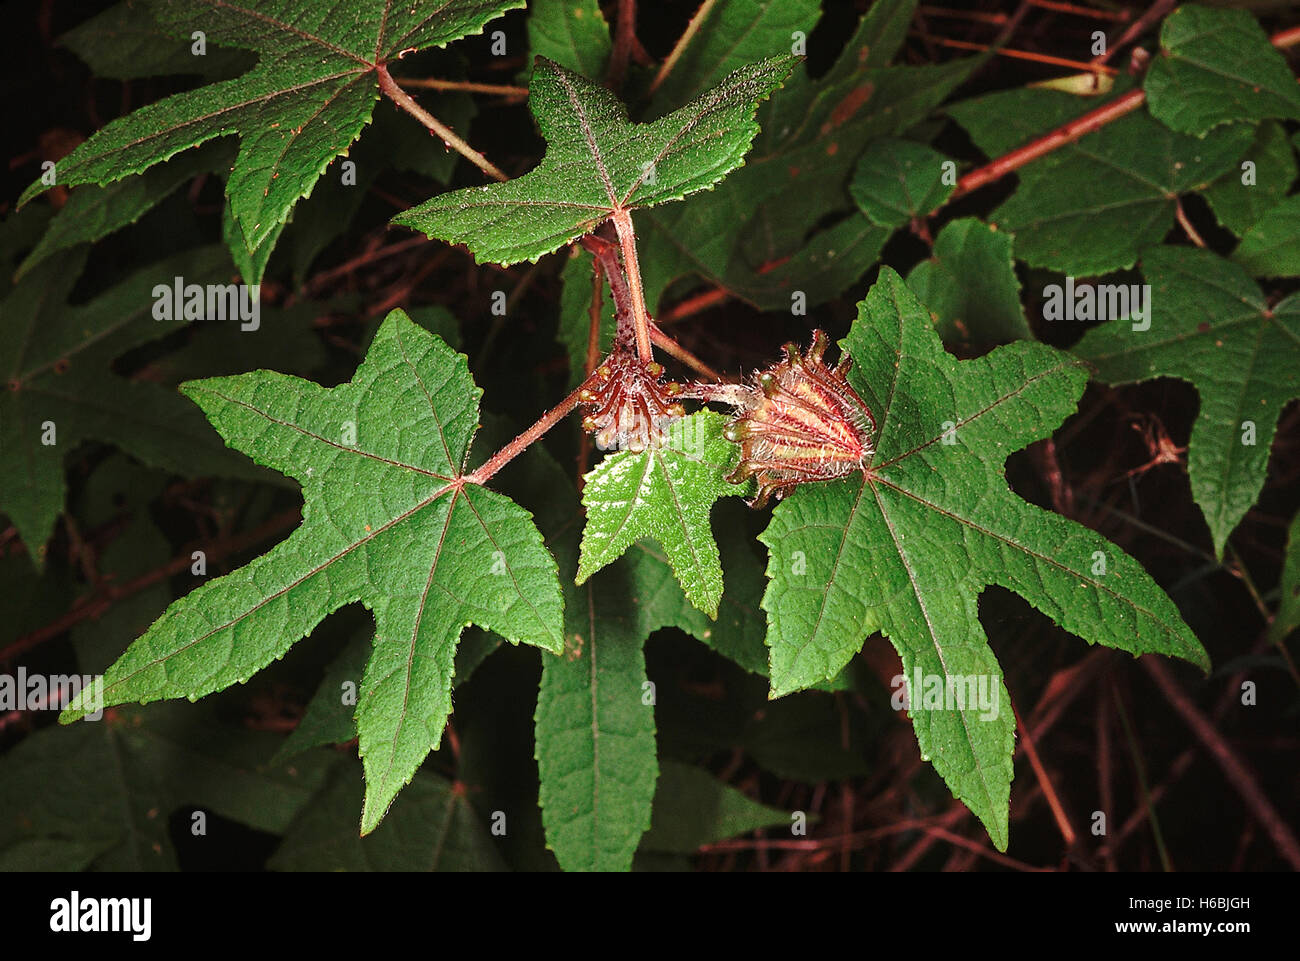 Familie: Malvaceae, Hibiscus SP - Kelch und Epicalyx. Ein Klettern Hibiskus mit gebogenen Stacheln am Stamm... Stockfoto